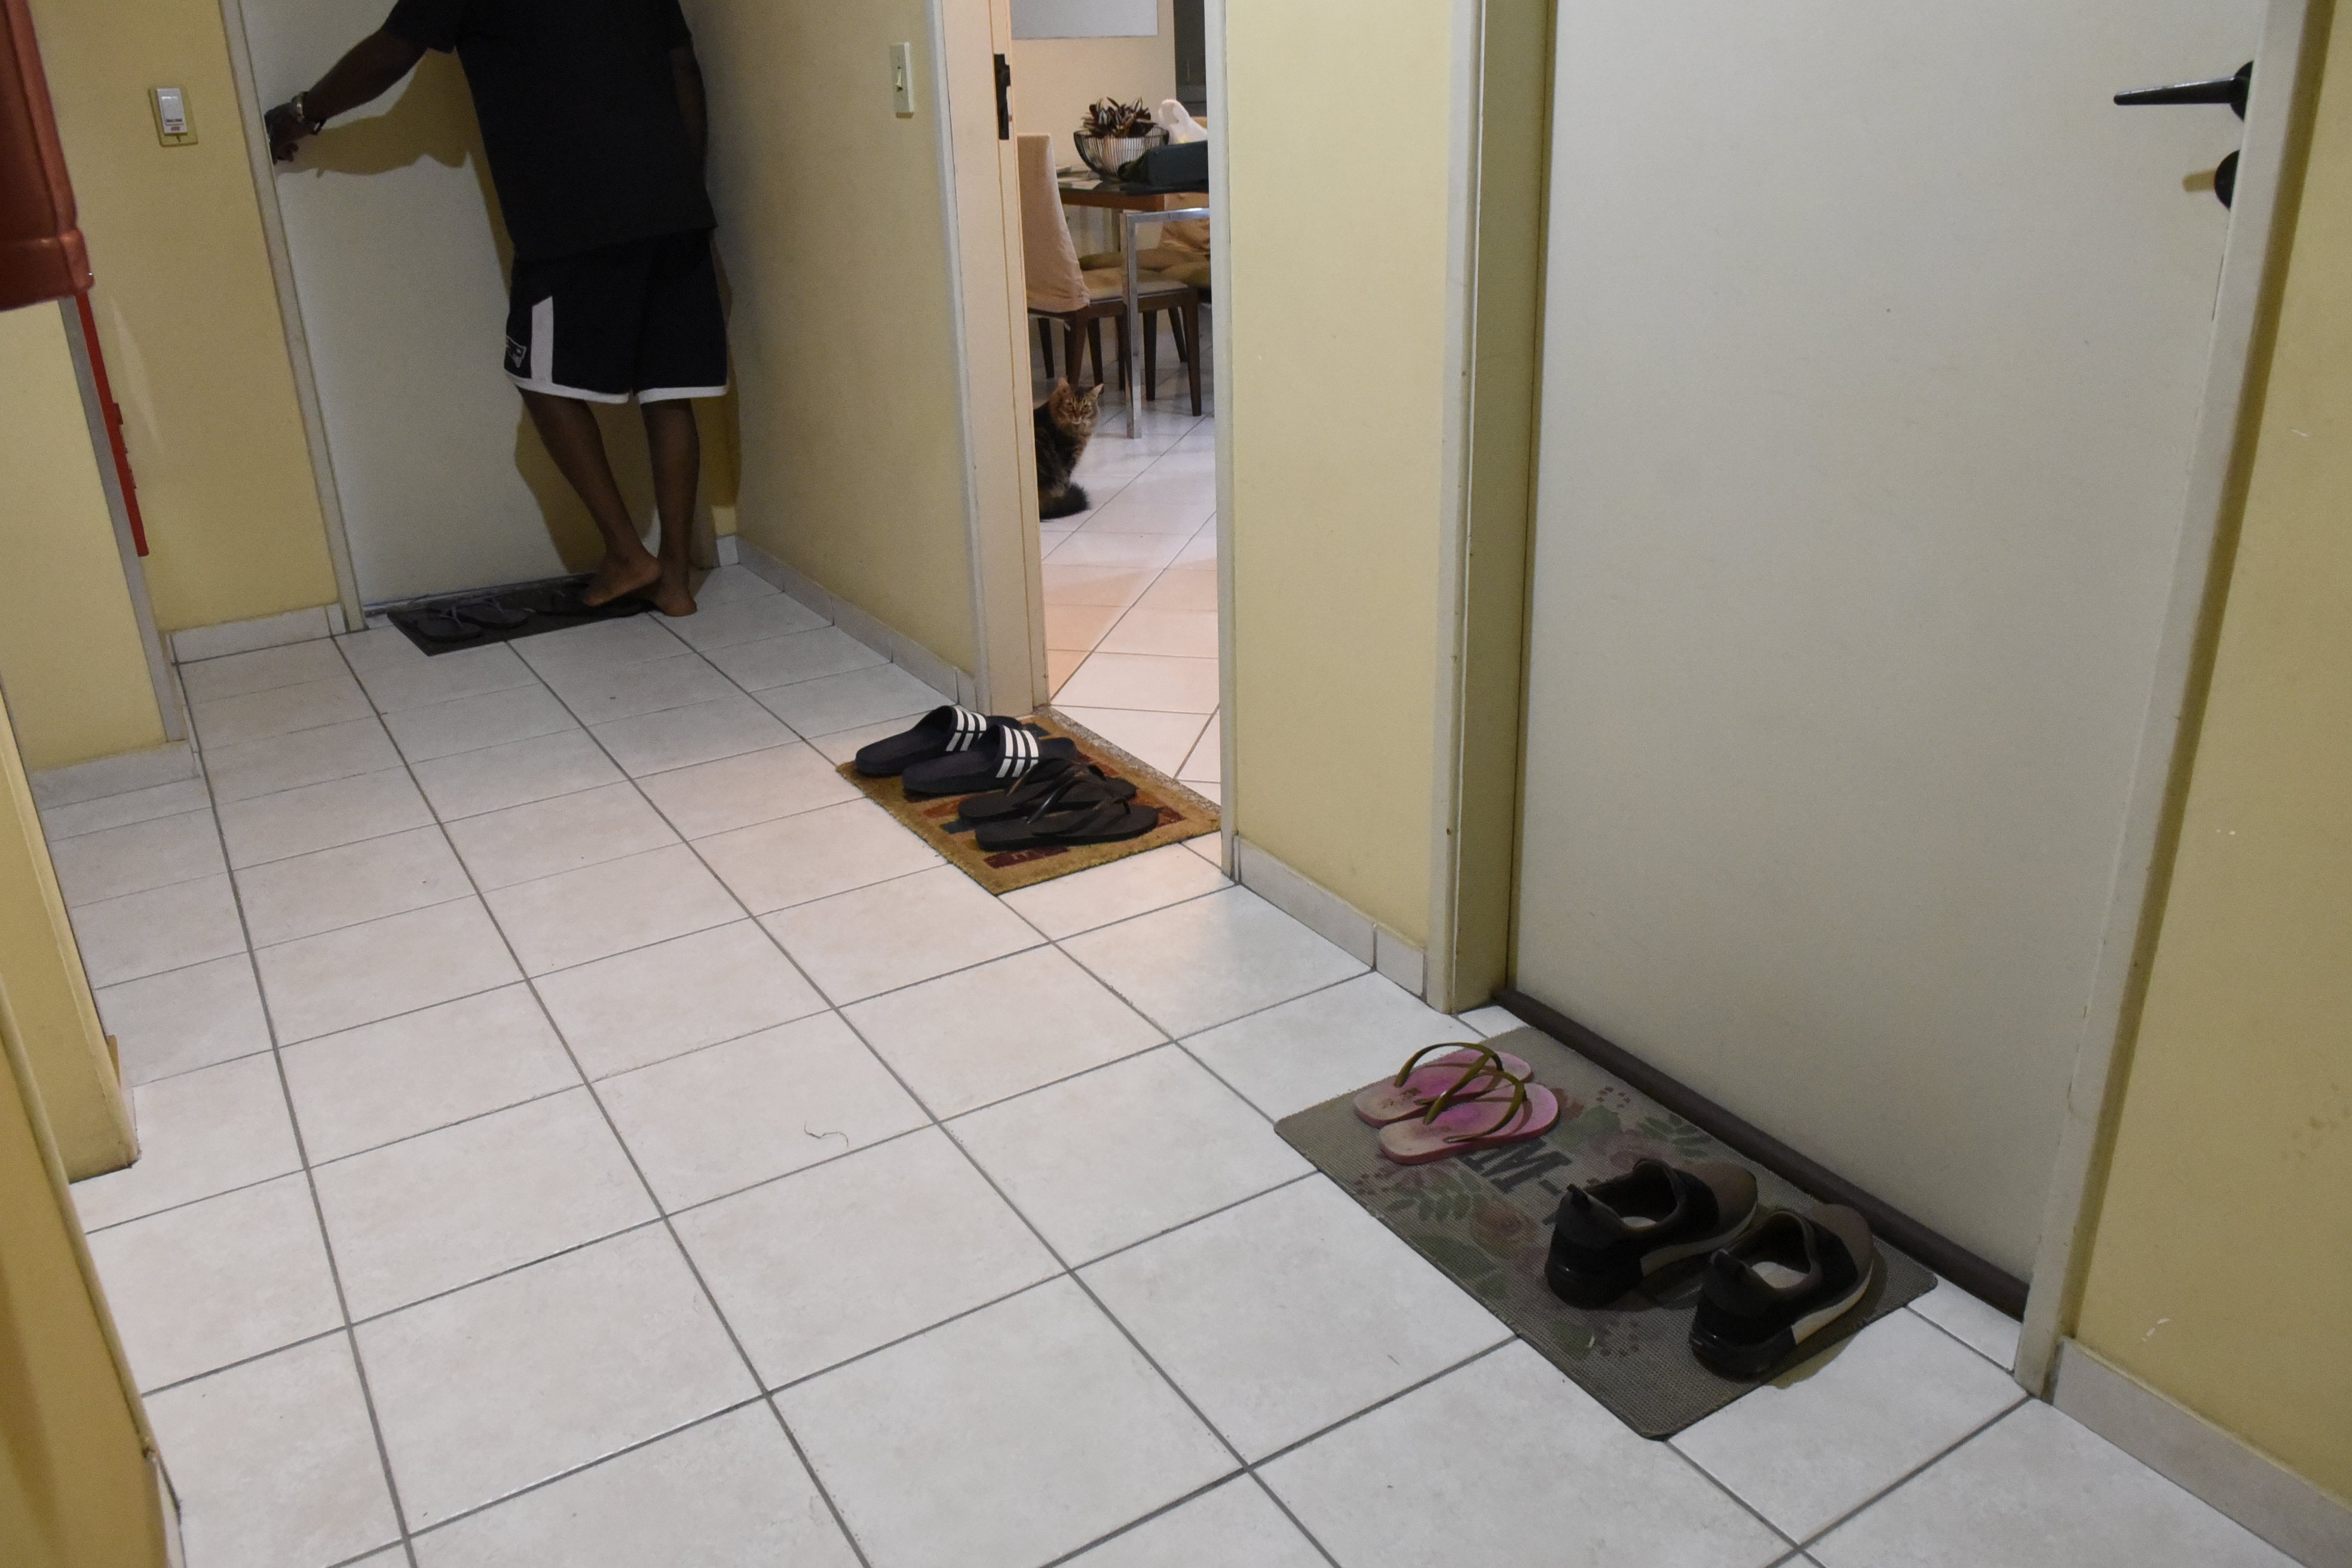 O coronavírus parece ter gerado um novo hábito nos brasileiros: deixar os calçados na porta de casa ou em um cantinho.